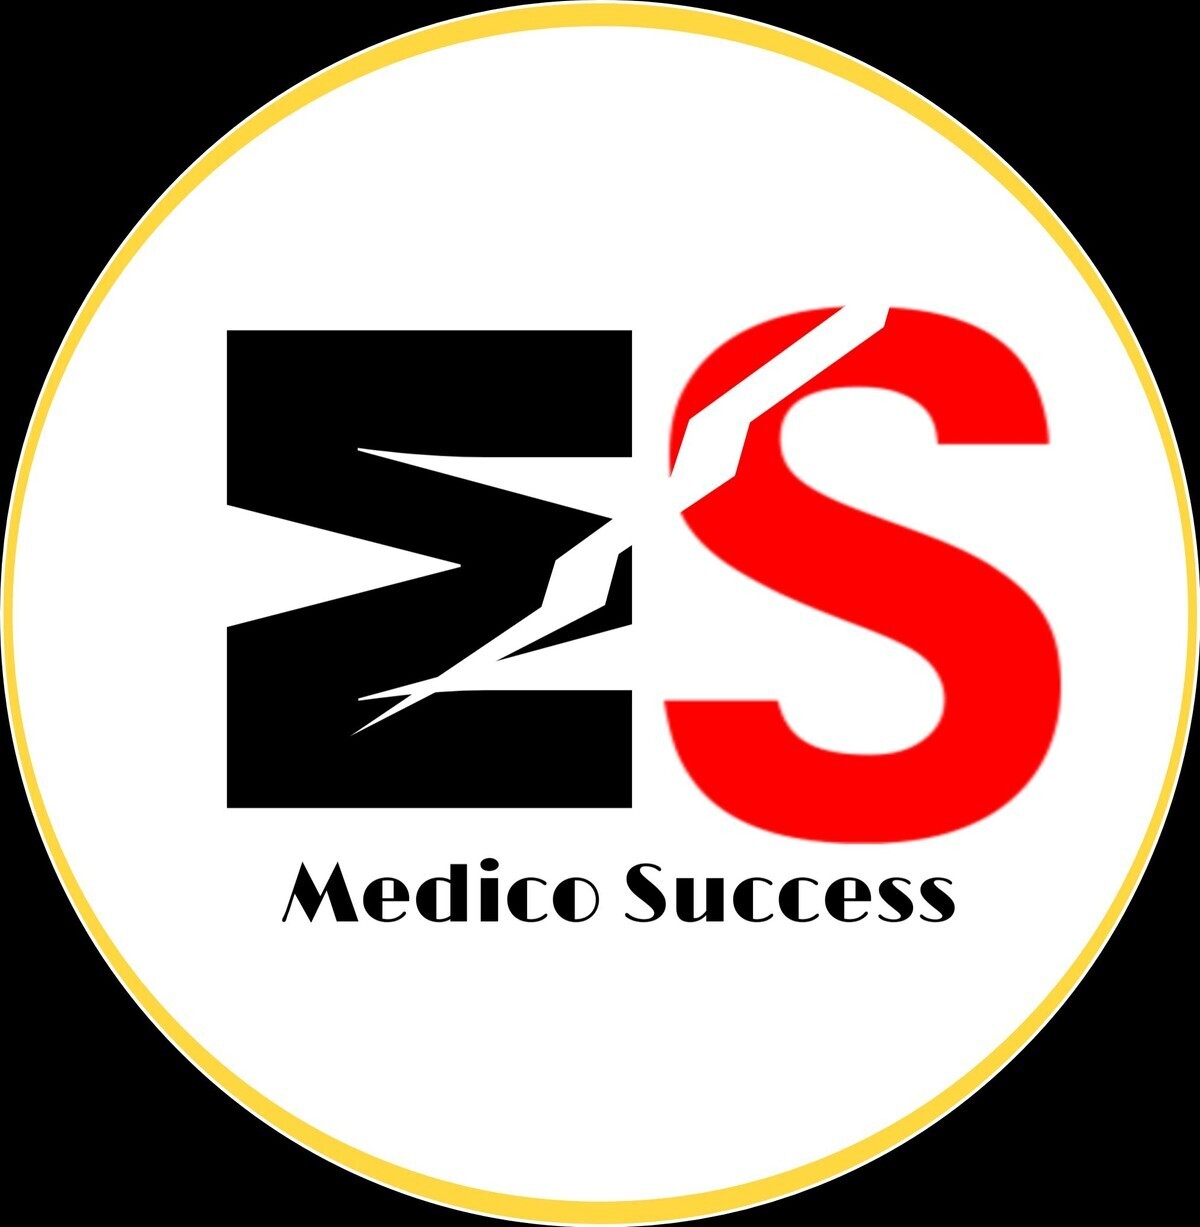 MS Medico Success photo